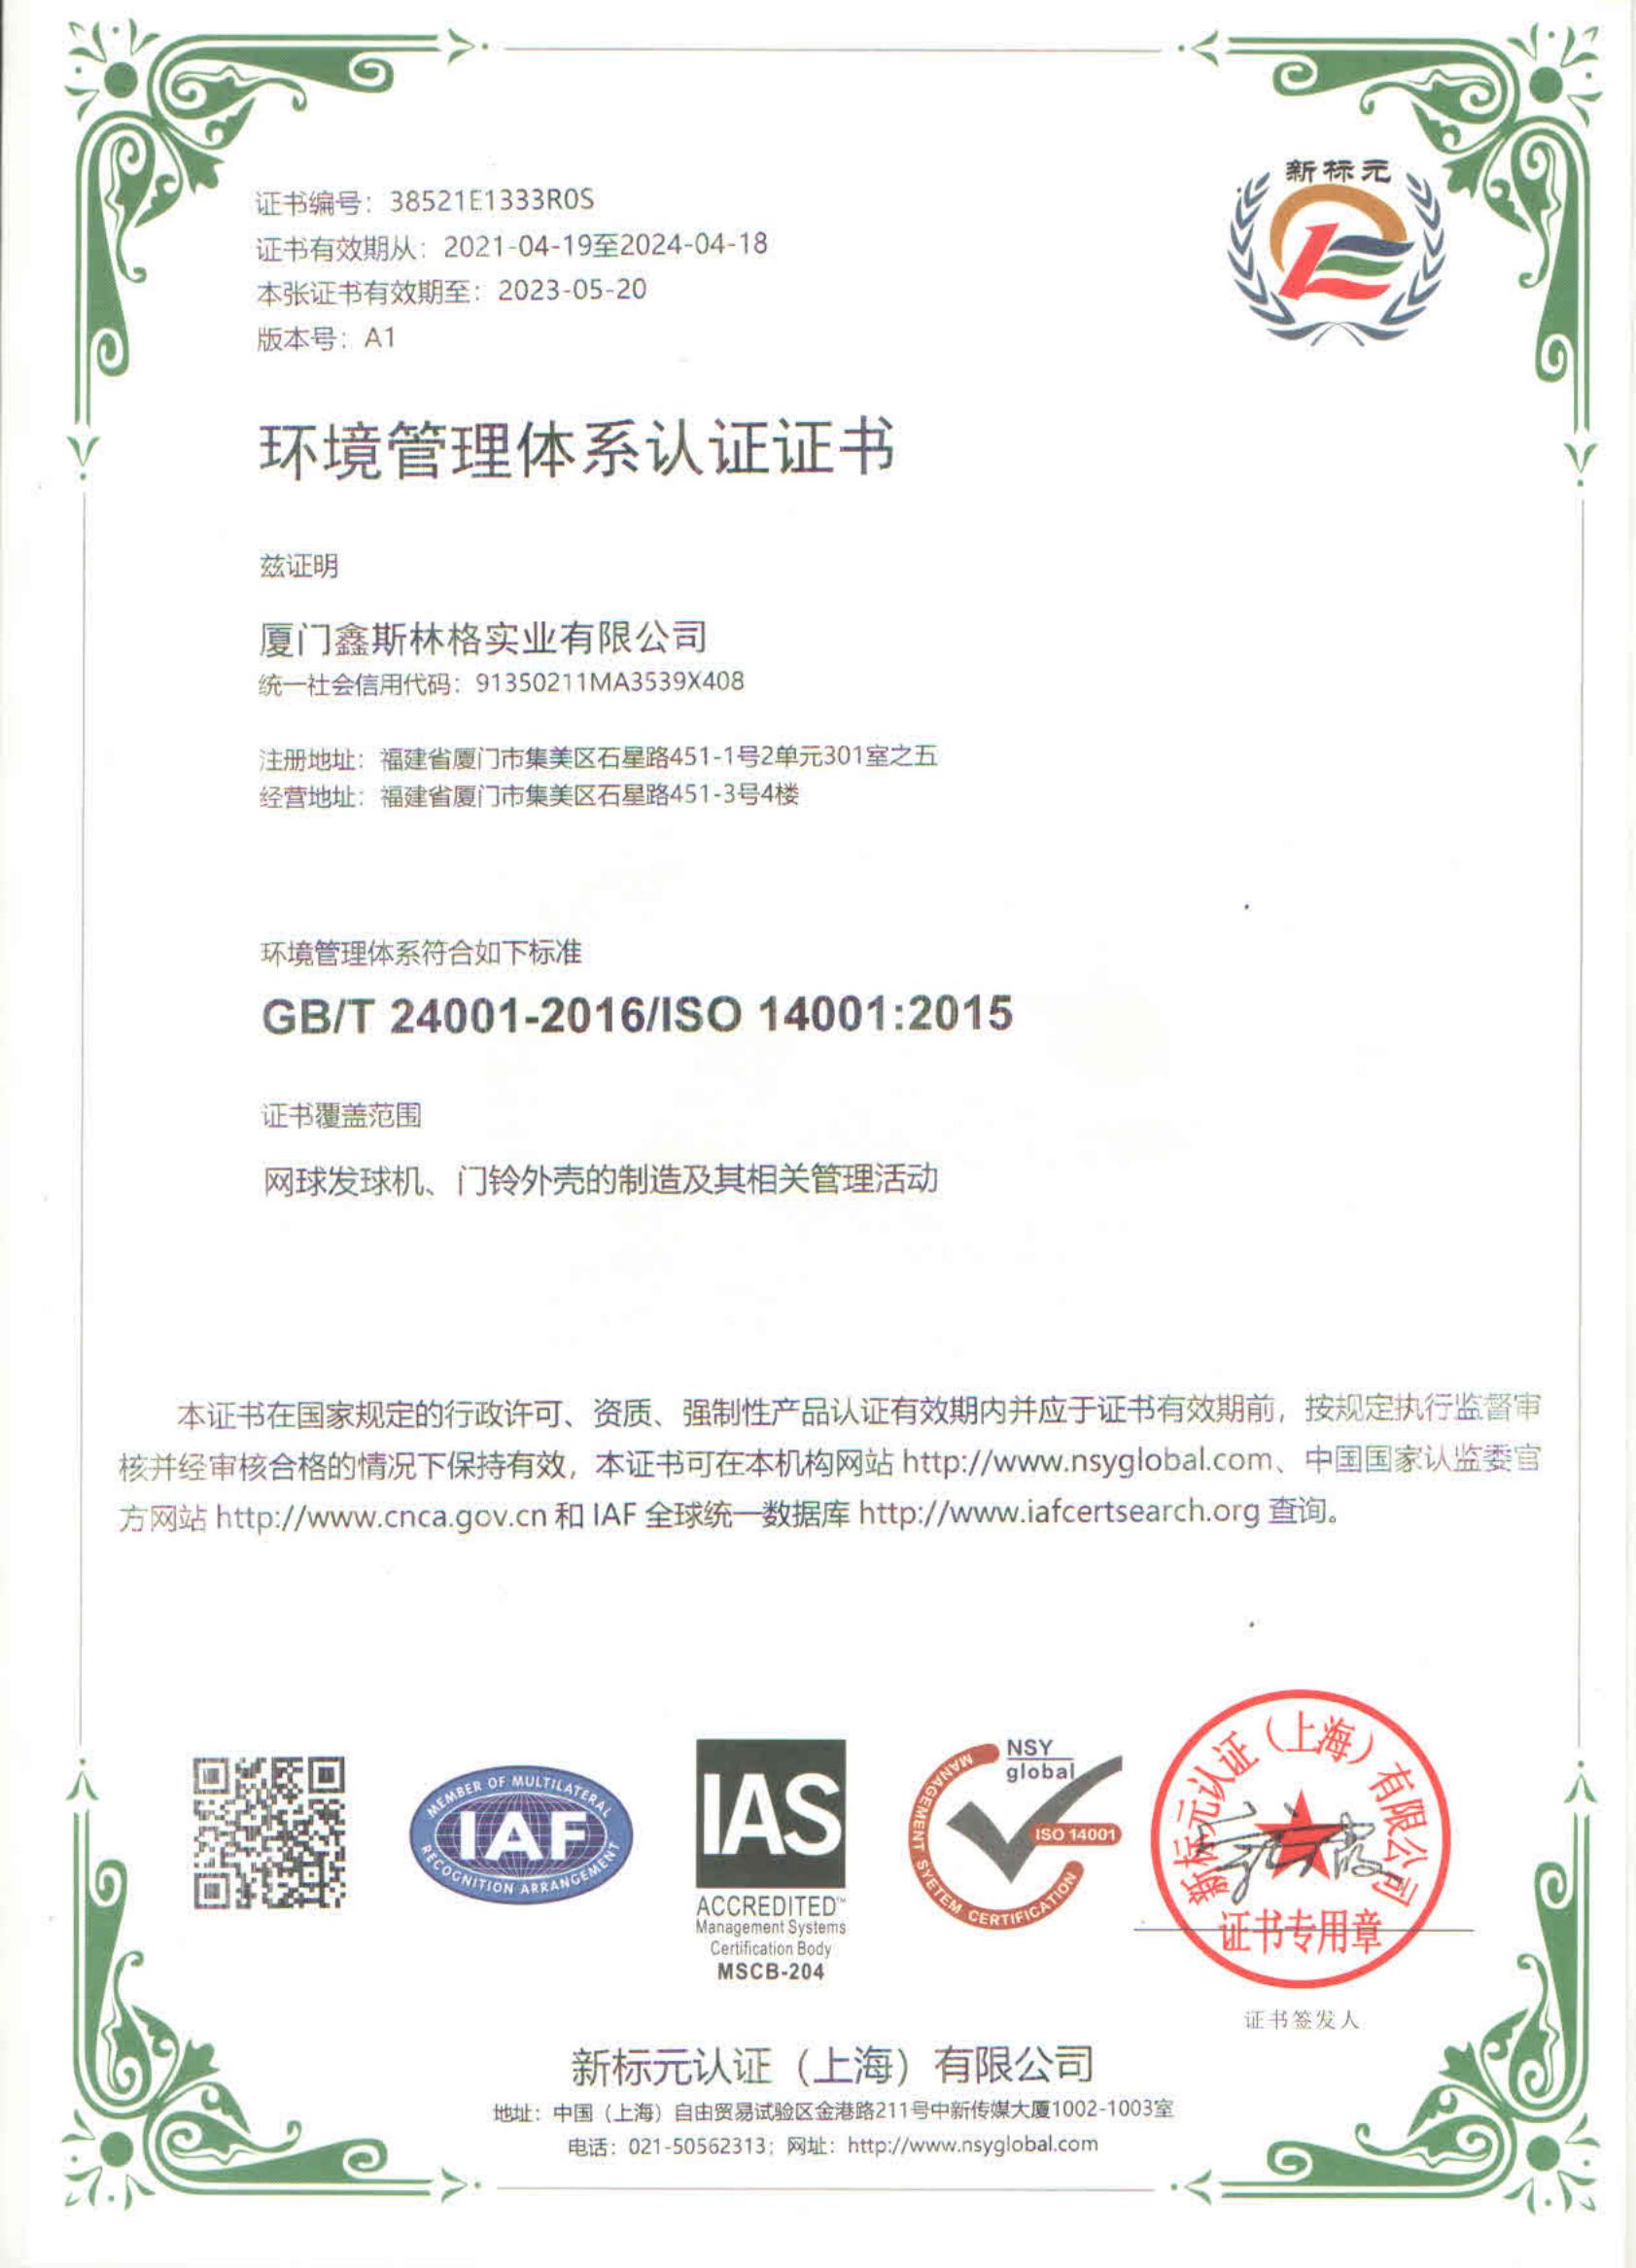 língíngíníníníníníníngíníníníníníníní ISO 14001 yíngín_00